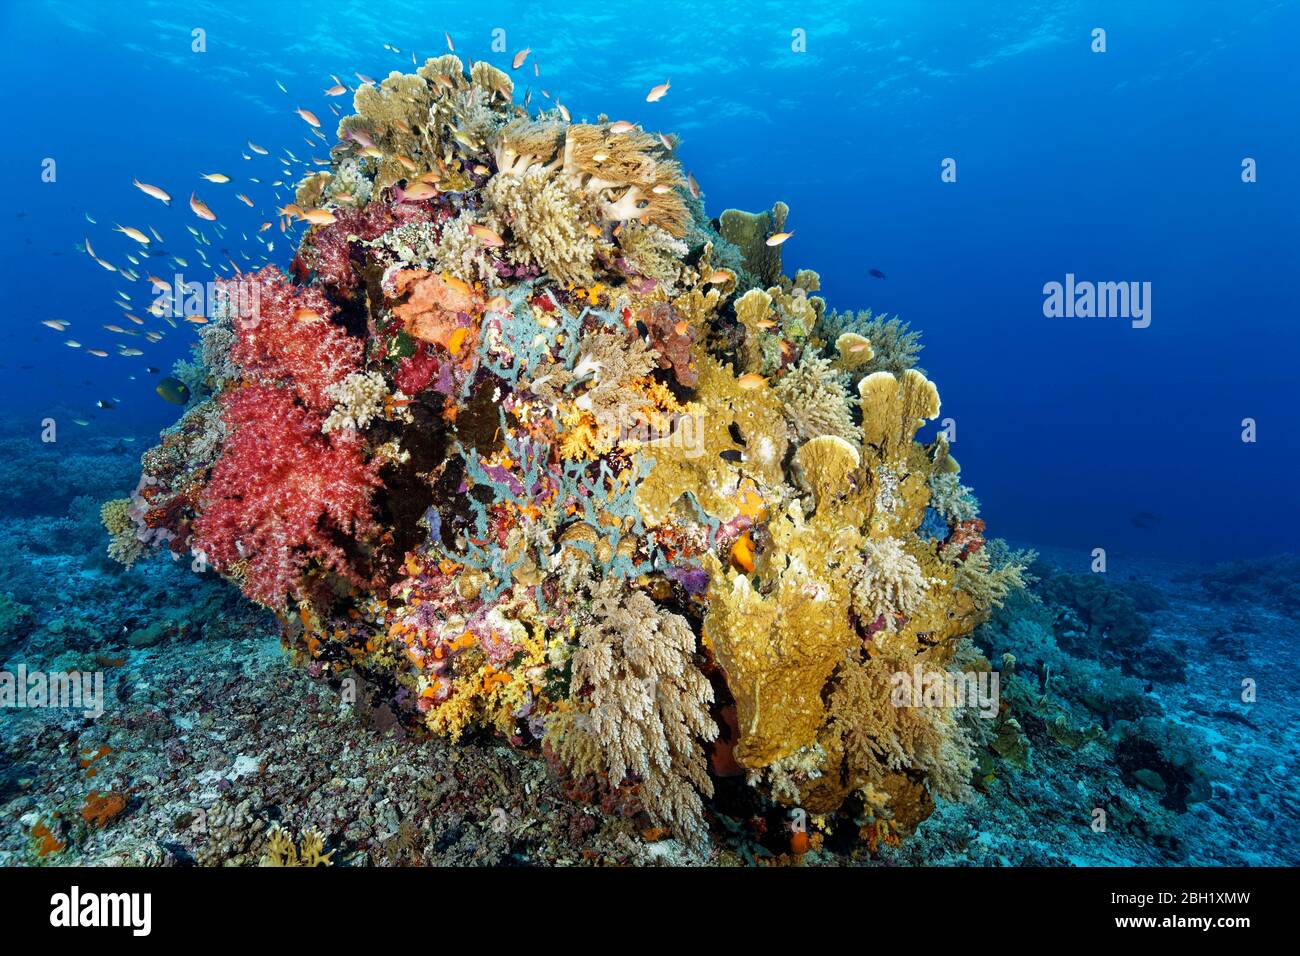 Bloque de coral grande en la cima del arrecife densamente cubierto de coral blando (Octocorallia), coral duro (Hexacorallia) y Sponge (Porifera), Pacífico, Mar de Sulu Foto de stock